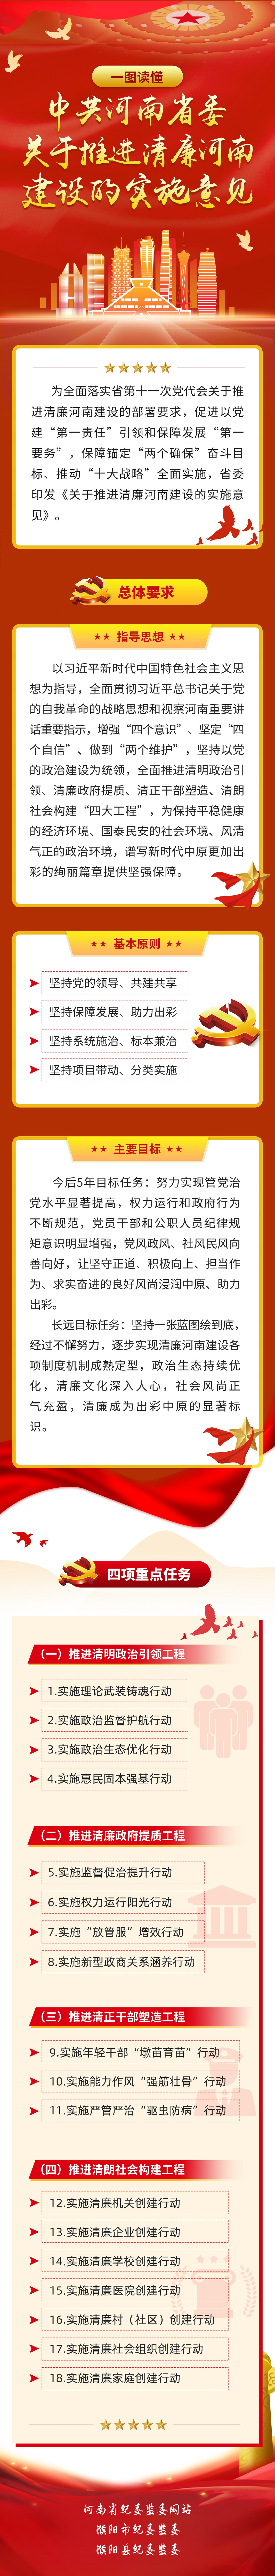 中共河南省委關於推進清廉河南建設的實施意見